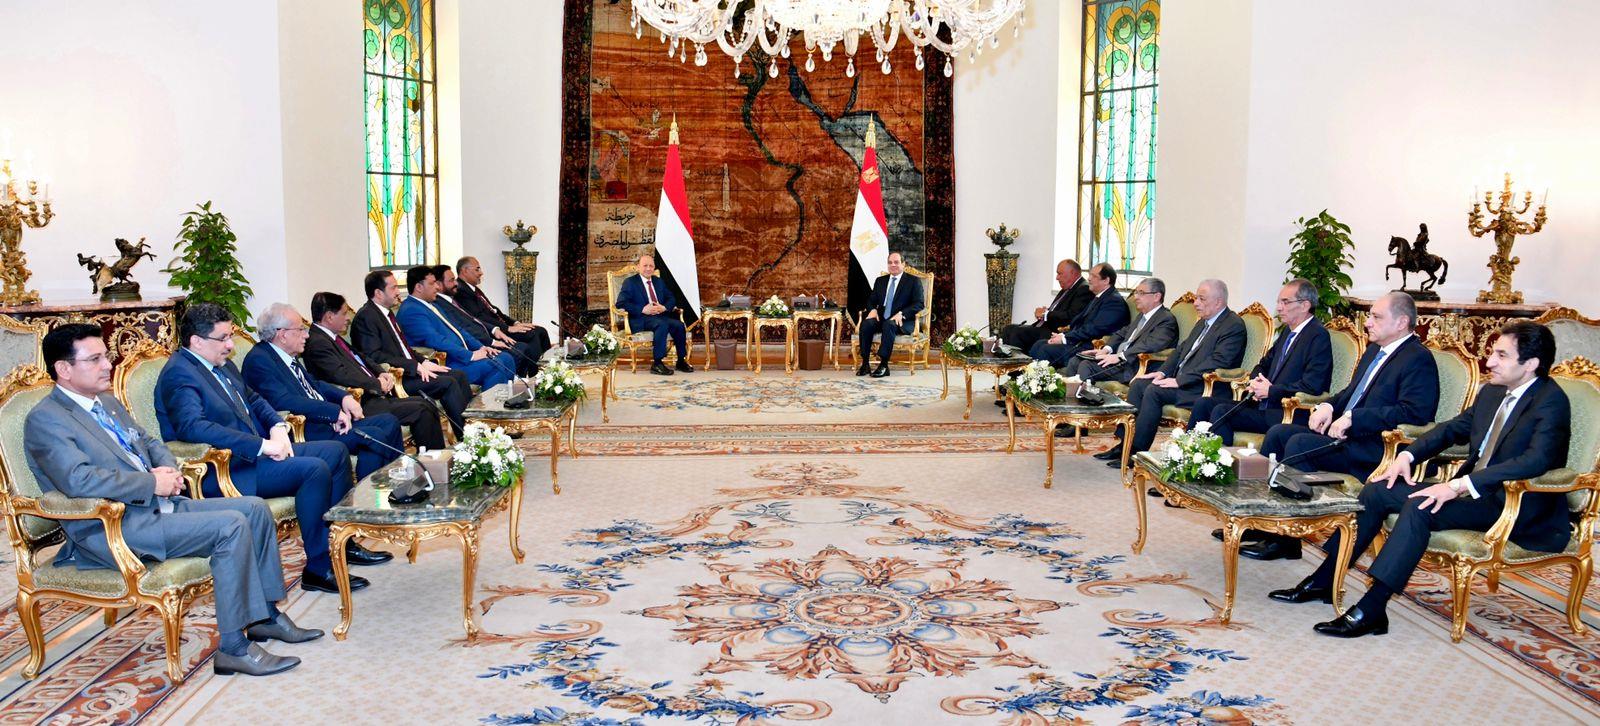 تفاصيل لقاء السيسي برئيس مجلس القيادة الرئاسي بالجمهورية اليمنية